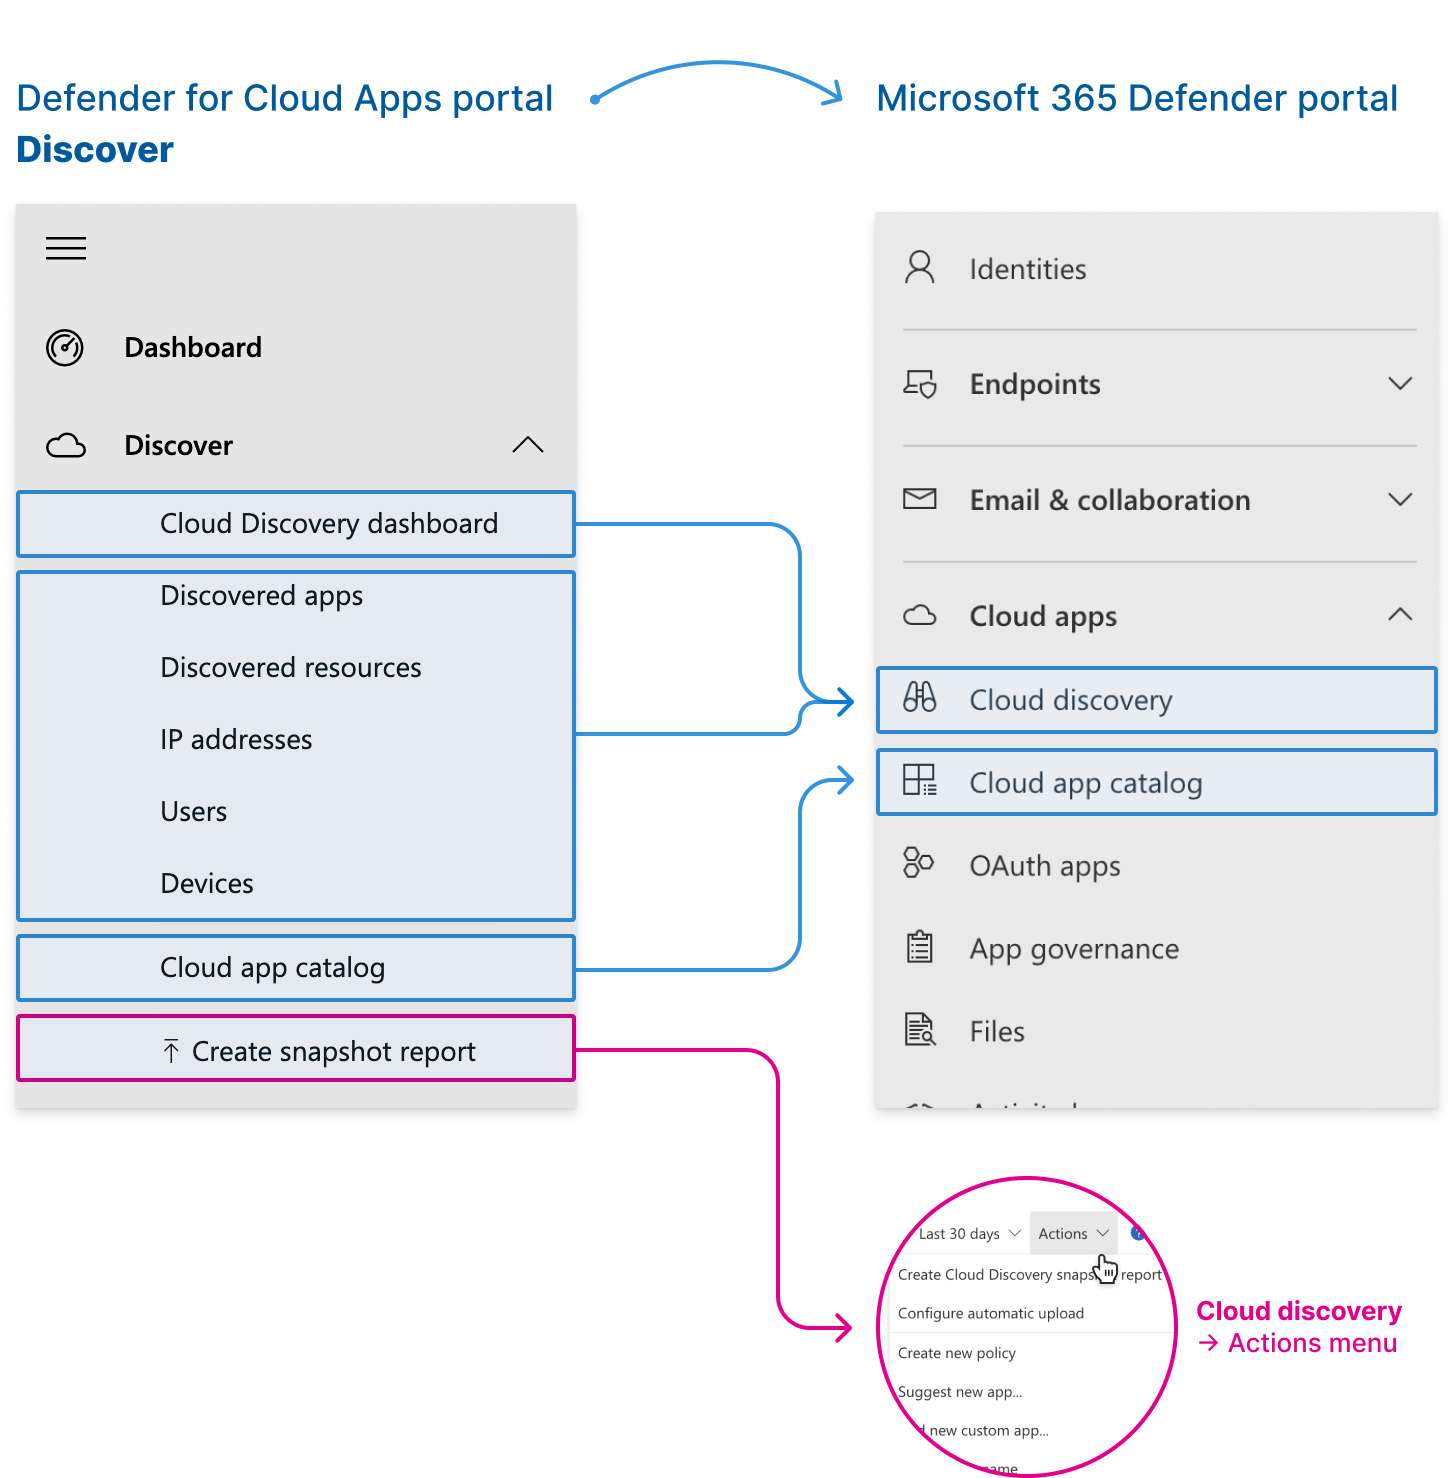 De nye plasseringene for Cloud Discovery-funksjoner i Microsoft 365 Defender-portalen